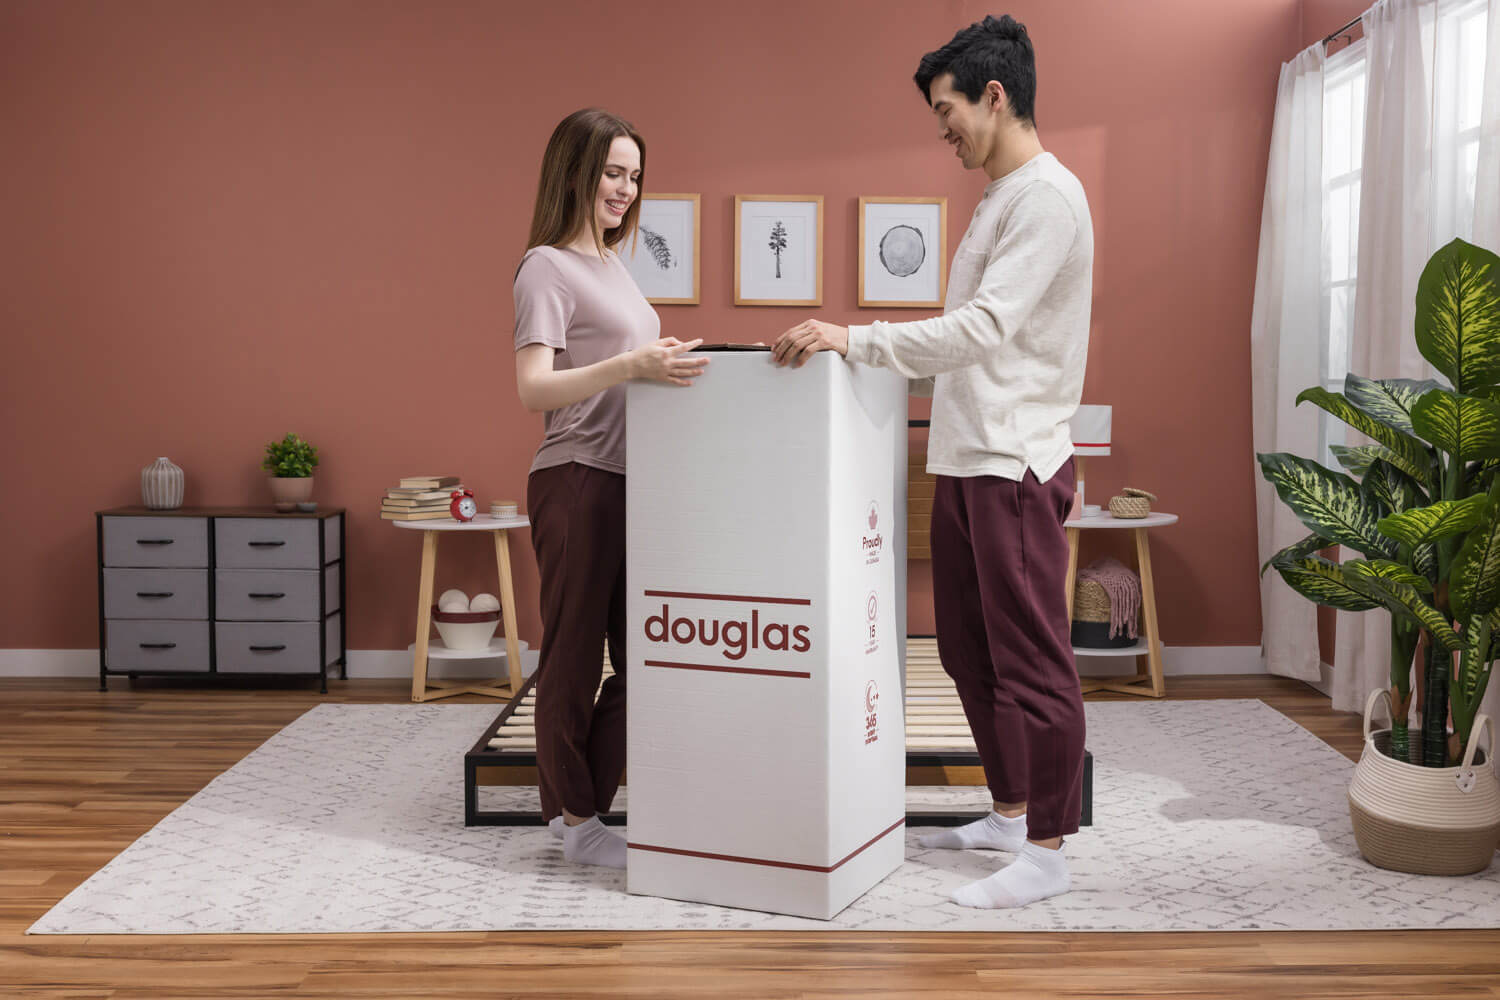 Woman and man opening the Douglas mattress box